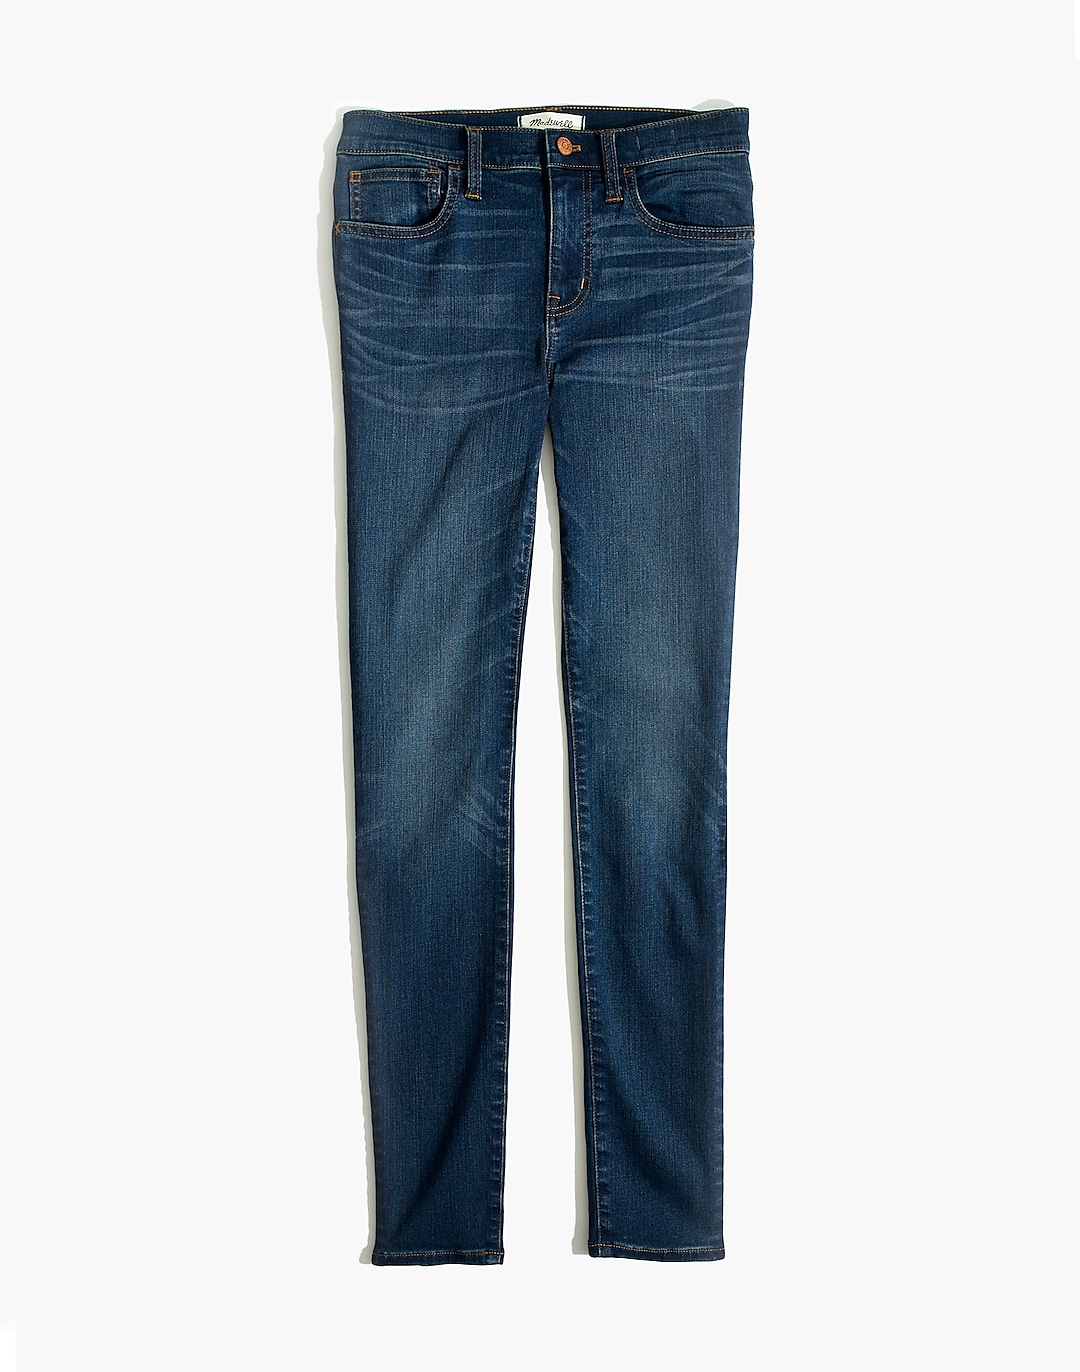 Women's Roadtripper Jeans in Orson Wash | Madewell